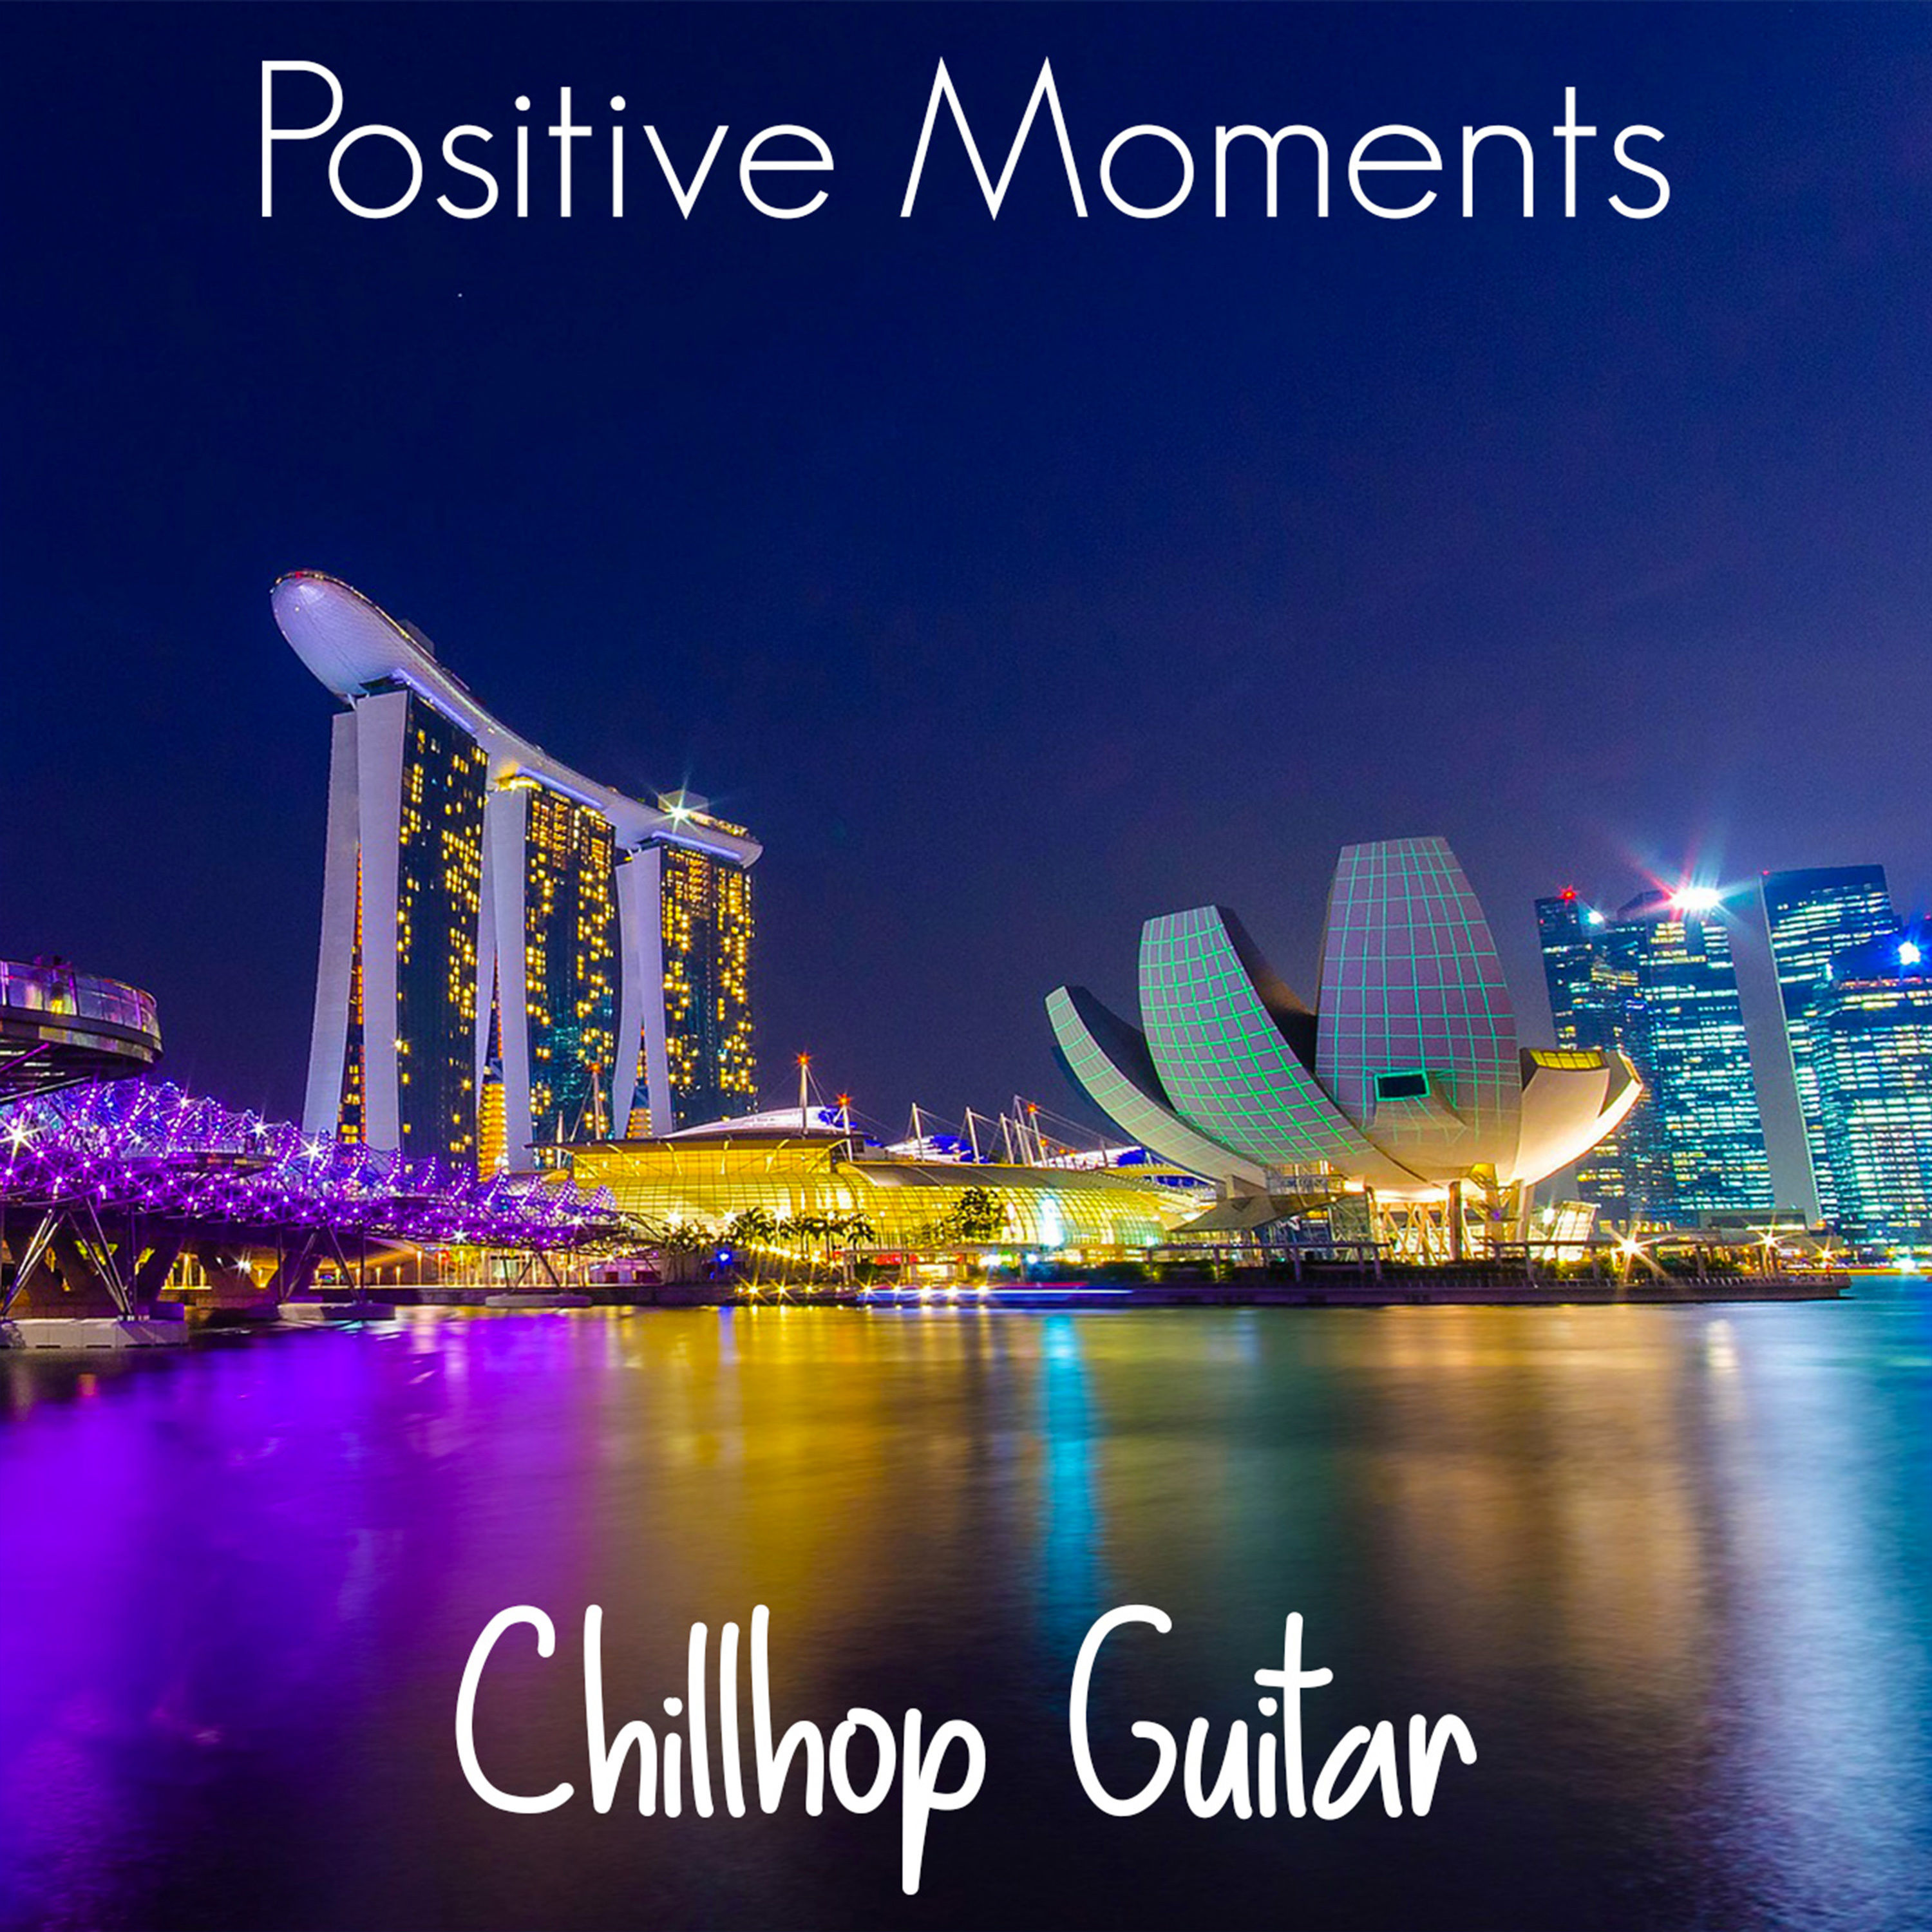 Chillhop Guitar - Positive Moments (2021) [FLAC 24bit/44,1kHz]